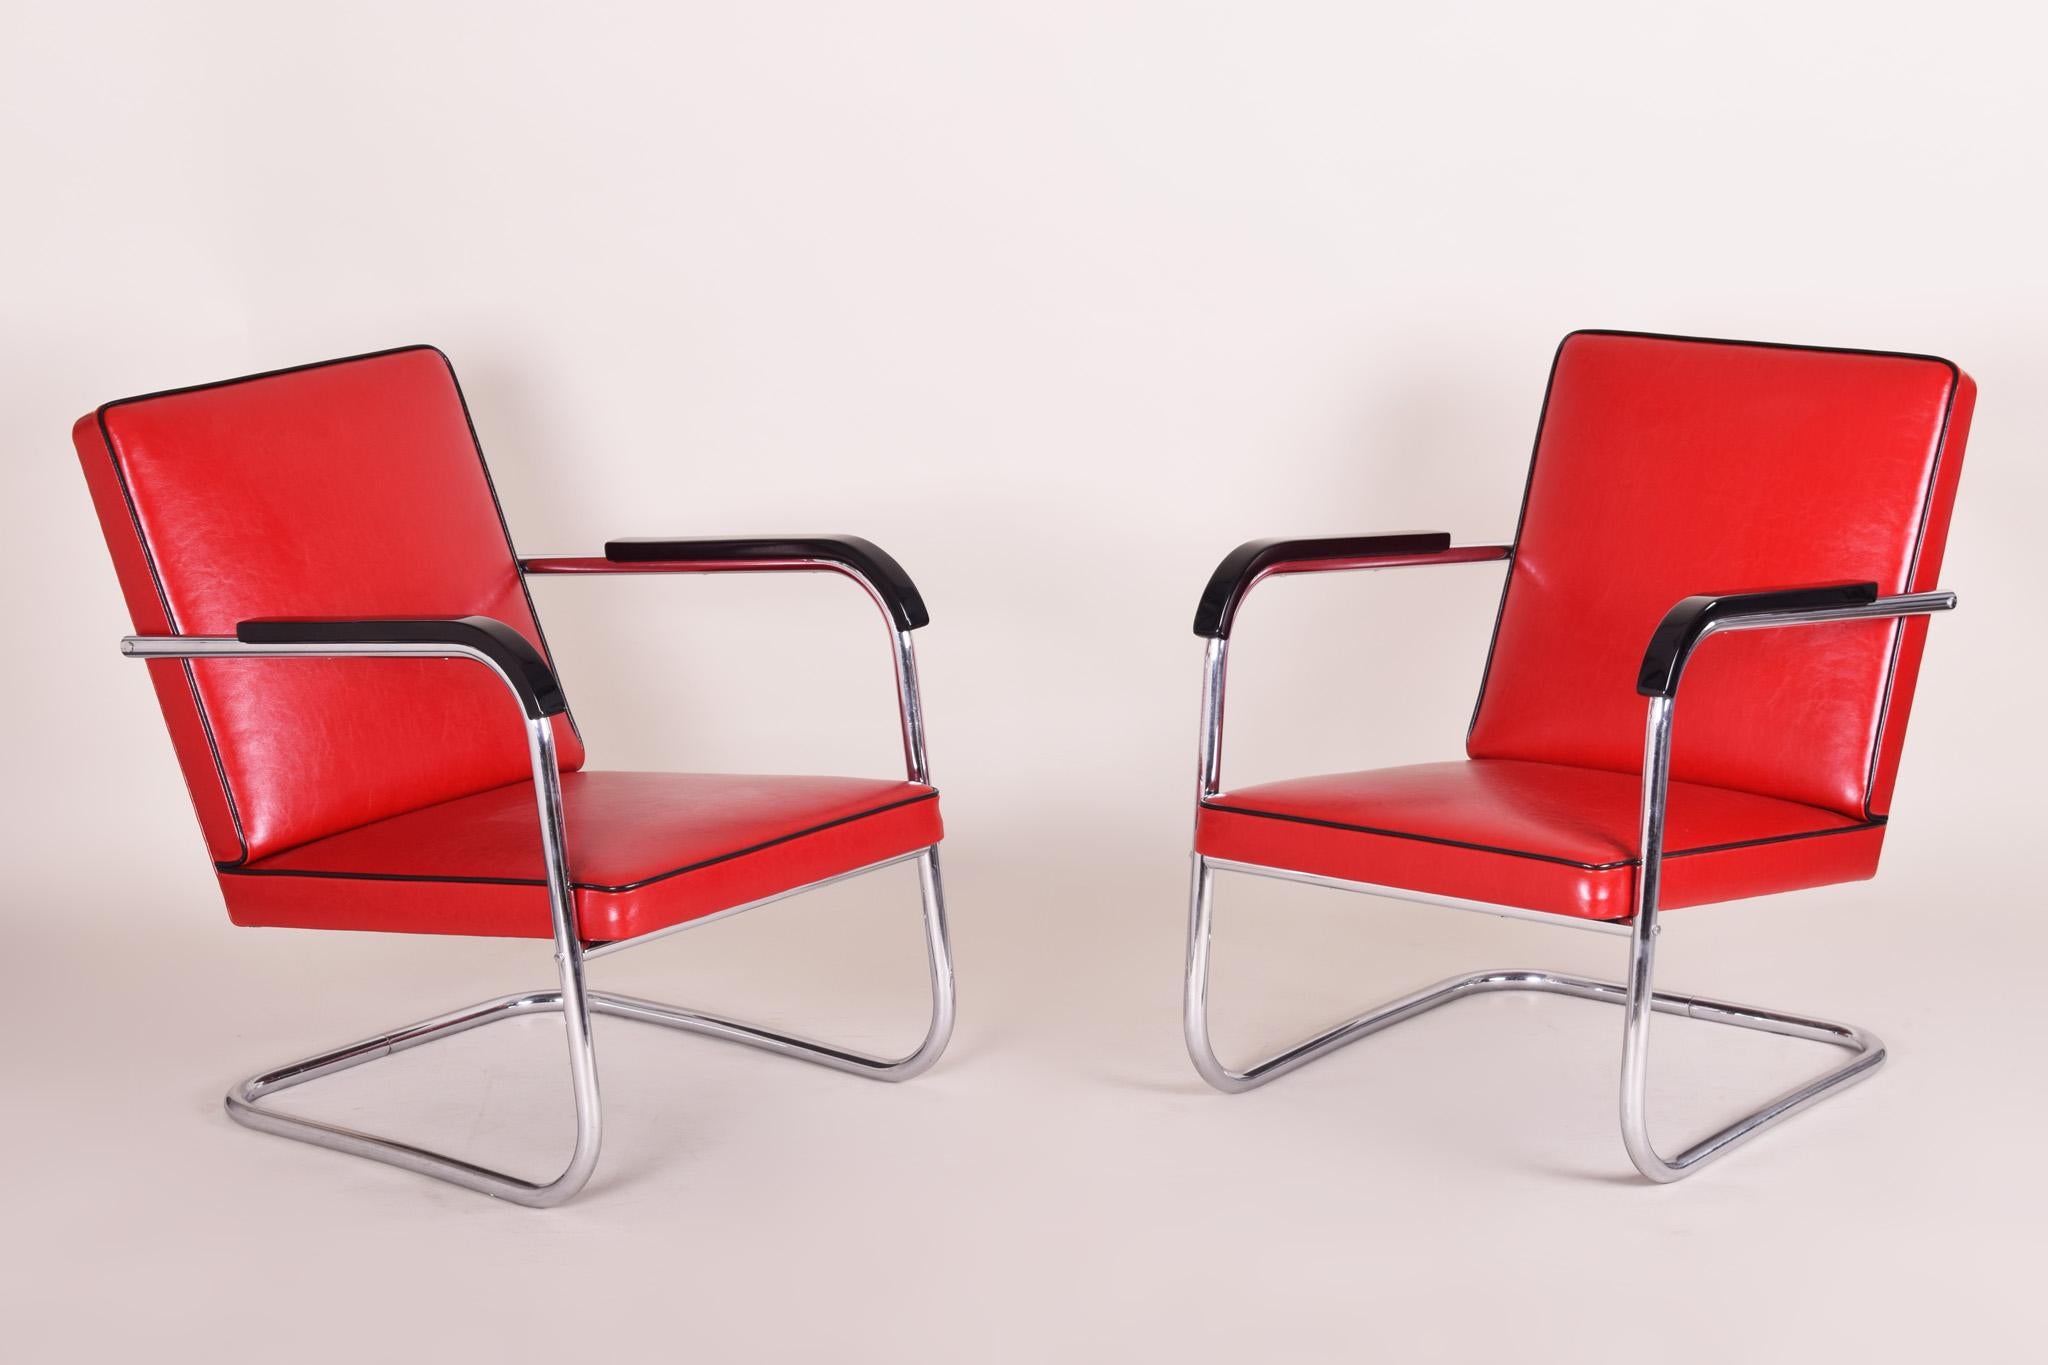 Paire de fauteuils Bauhaus rouges en cuir de haute qualité et acier chromé.
Fabriqué dans les années 30 en Allemagne par Thonet et Design/One par Anton Lorenz.
Entièrement restauré par notre équipe.